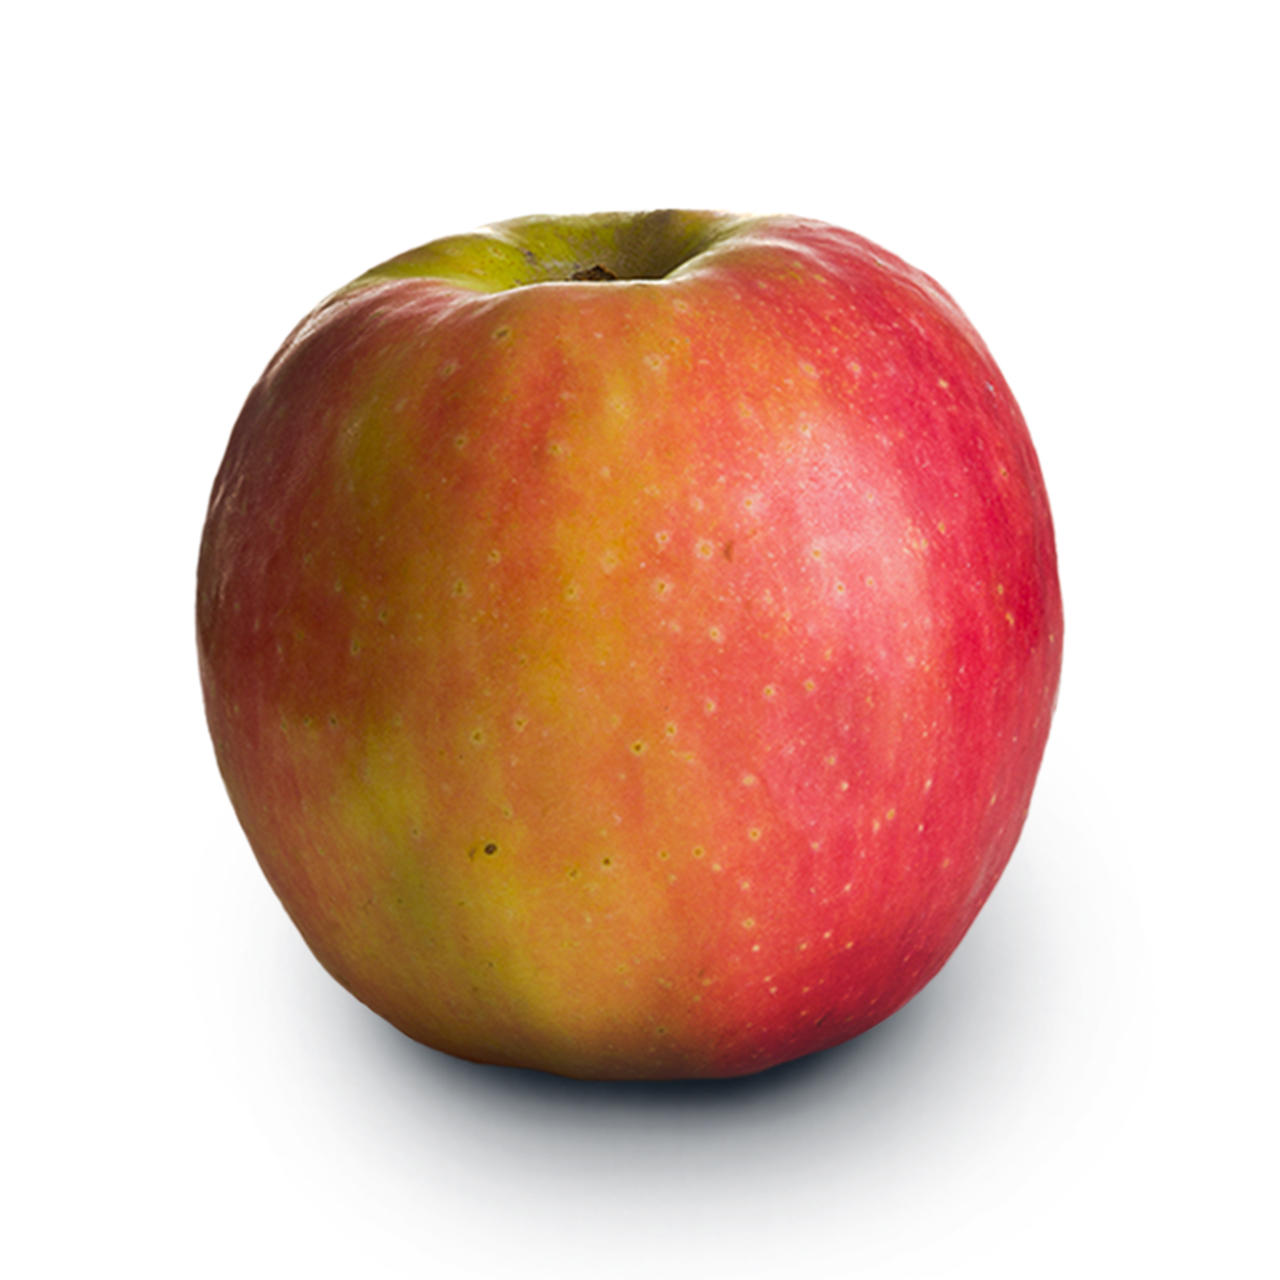 Pink Lady er i nogle lande det mest populære æble. I Danmark er Pink Lady i top 10.